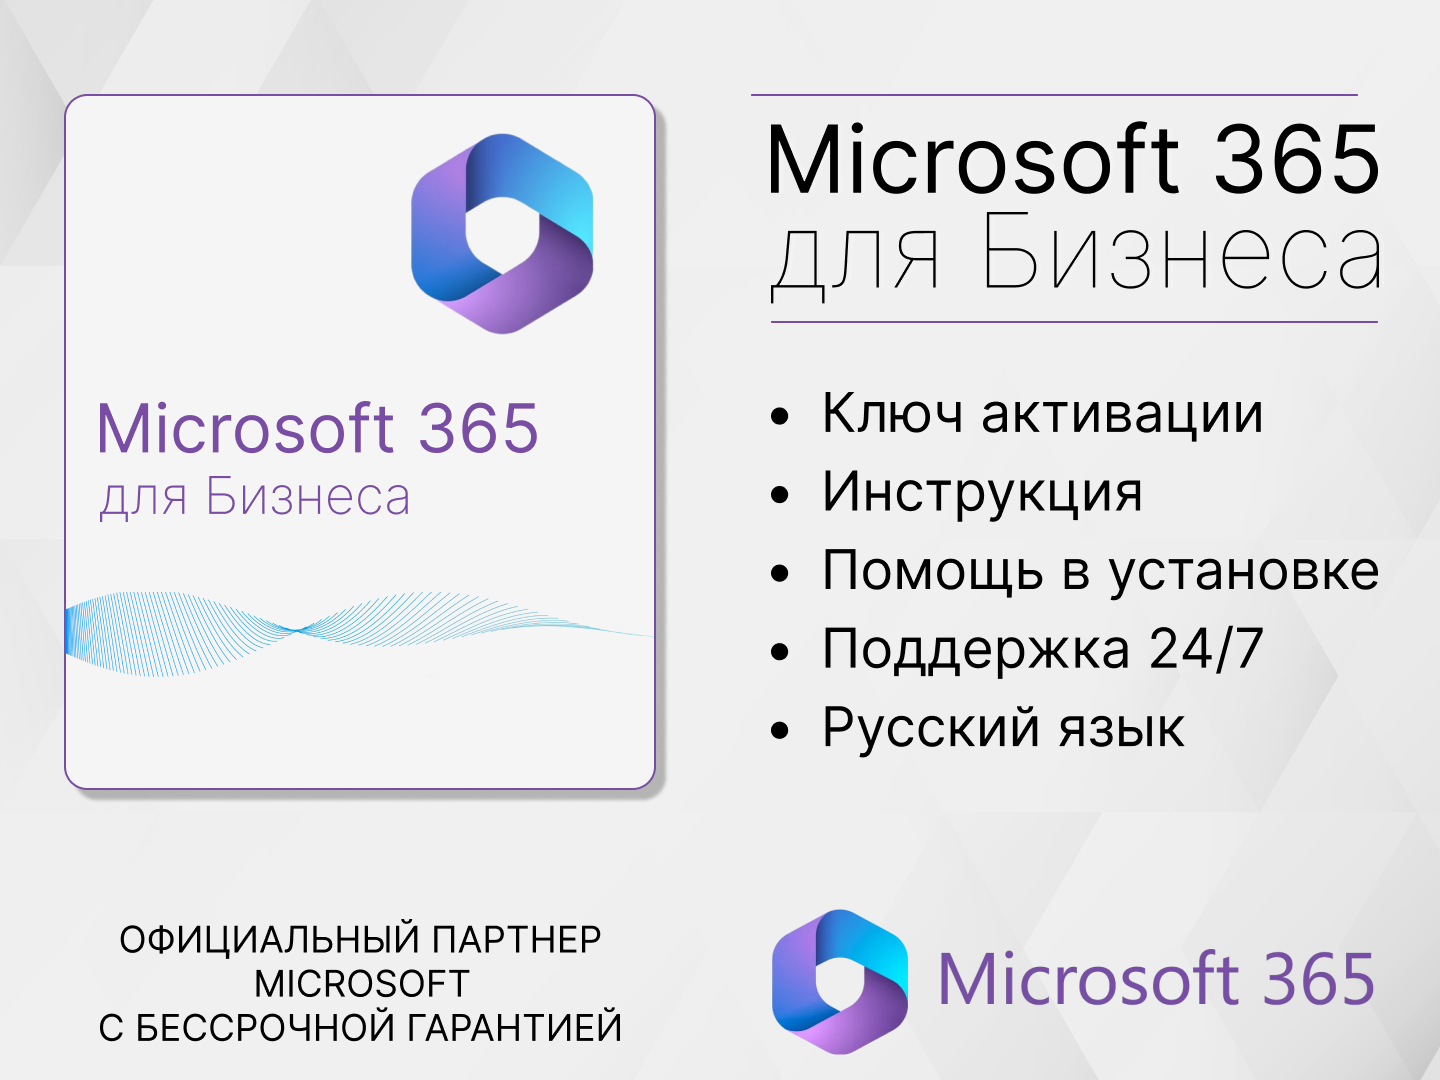 Microsoft 365 Бизнес стандарт для России, Русский язык.